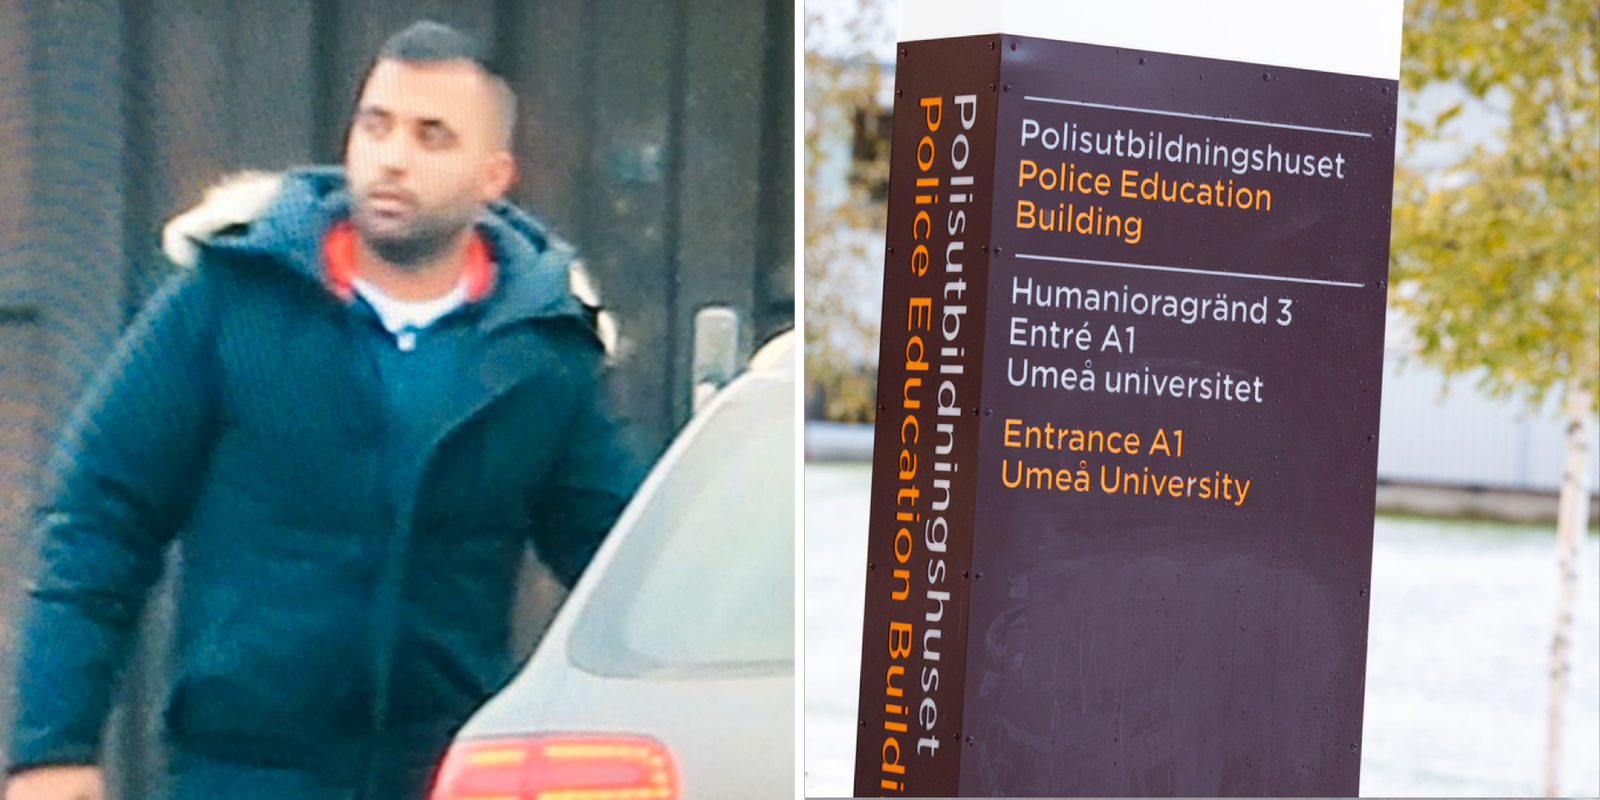 granskning: ismail abdo hade en kärleksrelation med en polisstudent